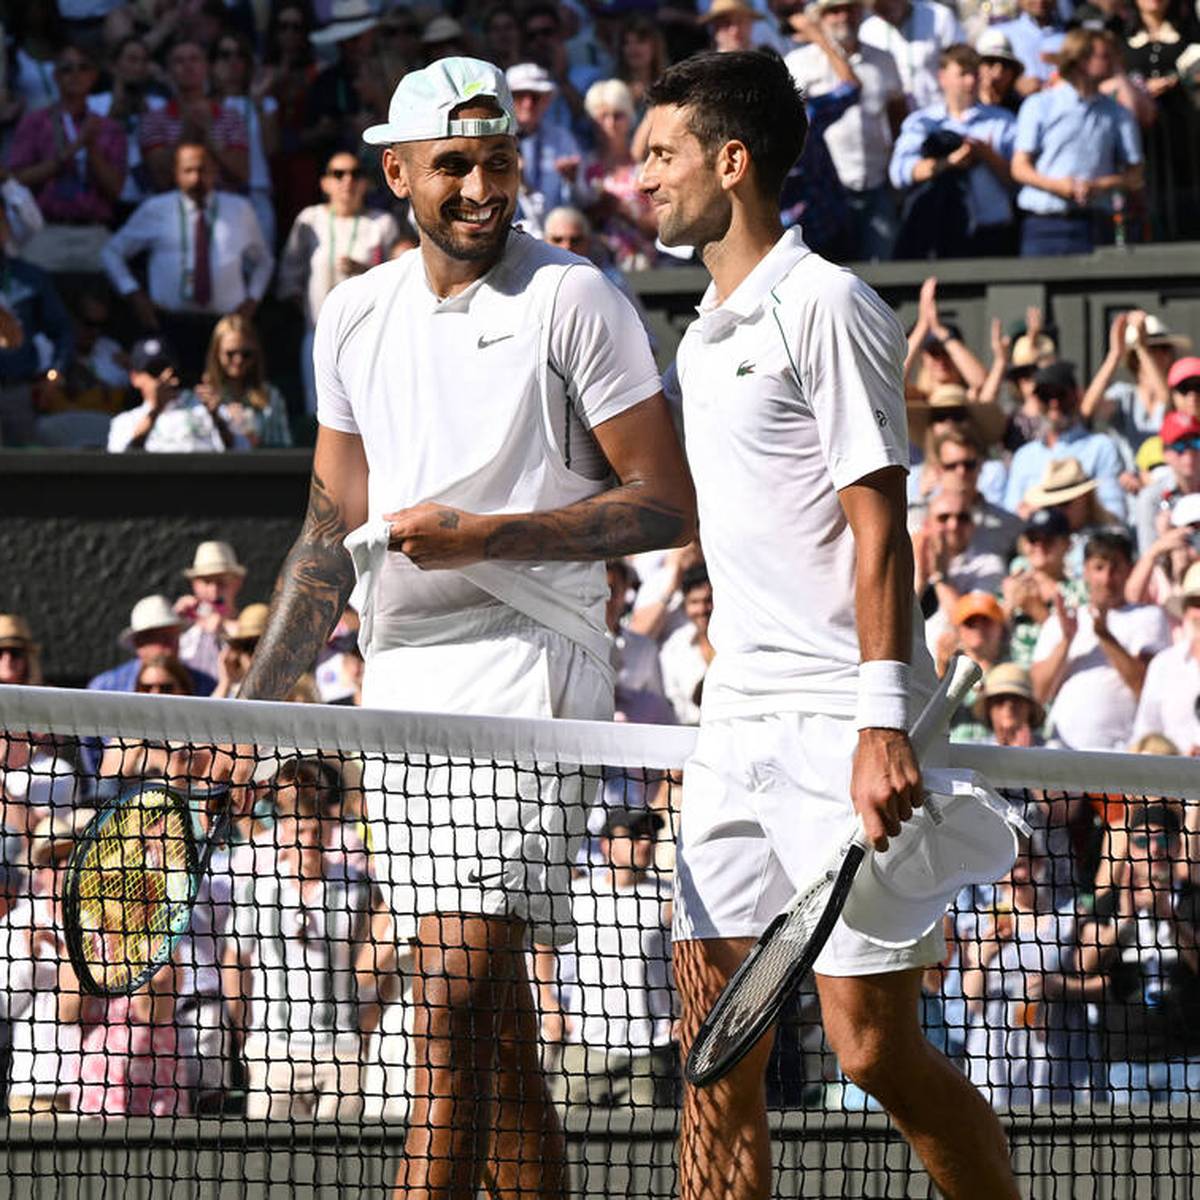 Nach Wimbledon-Sieg Novak Djokovic vergisst Hochzeitstag and scherzt mit Nick Kyrgios